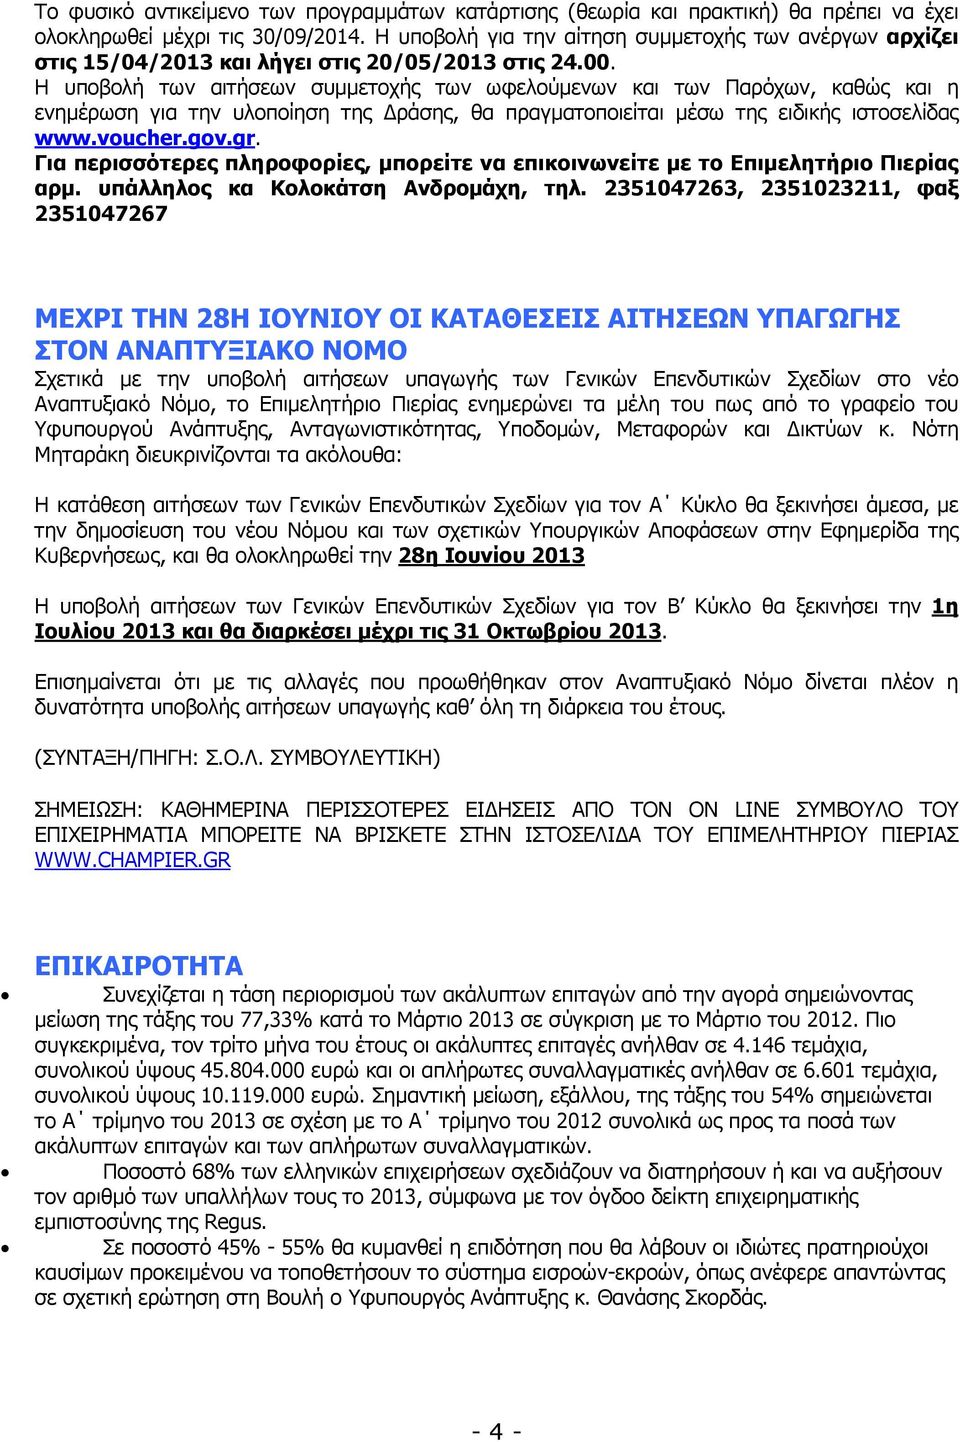 Η υποβολή των αιτήσεων συµµετοχής των ωφελούµενων και των Παρόχων, καθώς και η ενηµέρωση για την υλοποίηση της ράσης, θα πραγµατοποιείται µέσω της ειδικής ιστοσελίδας www.voucher.gov.gr.